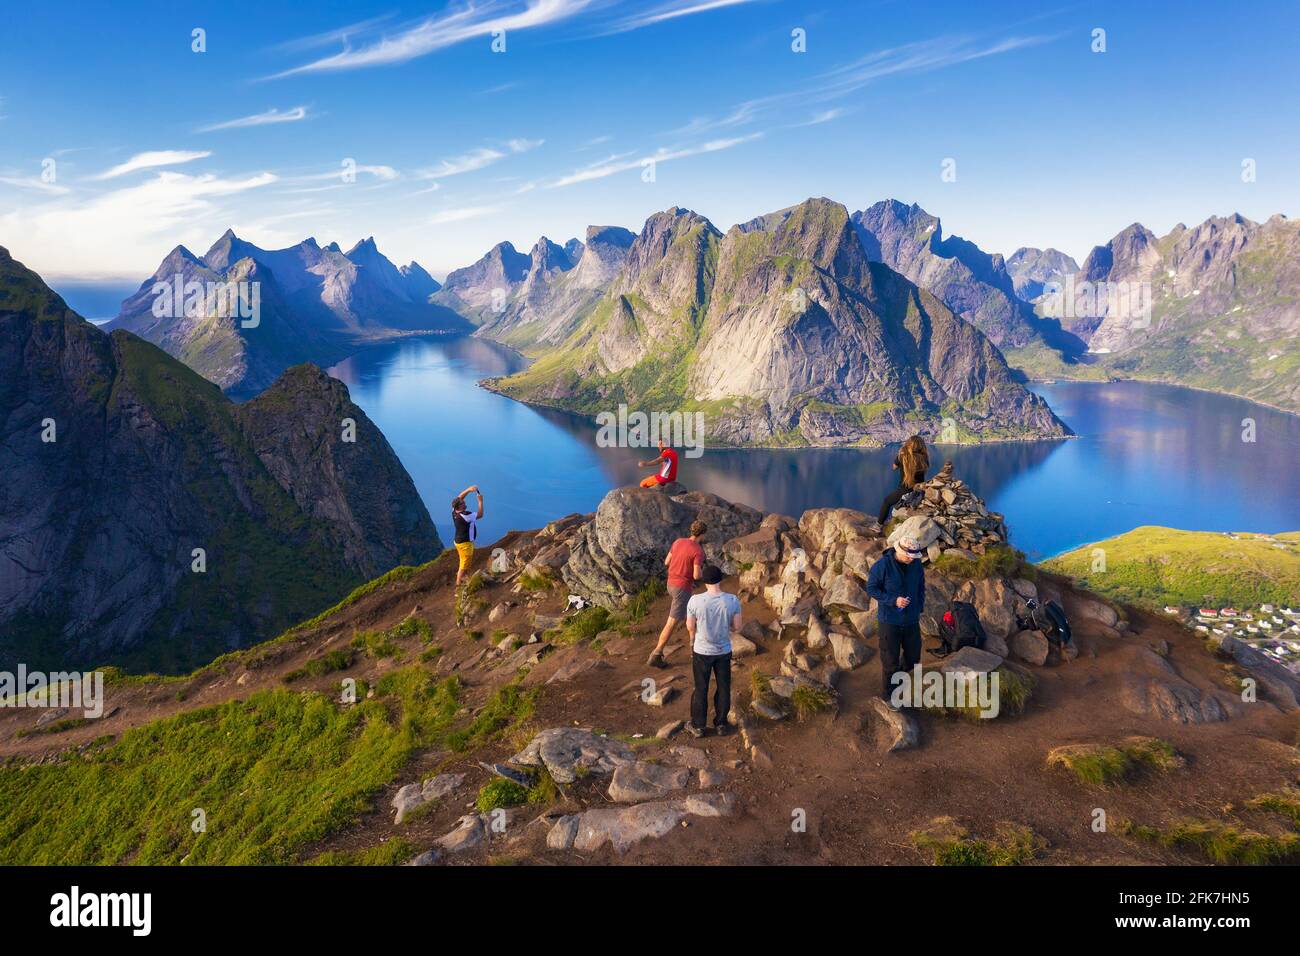 Hikers on top of Mt. Reinebringen, Lofoten islands, Norway Stock Photo